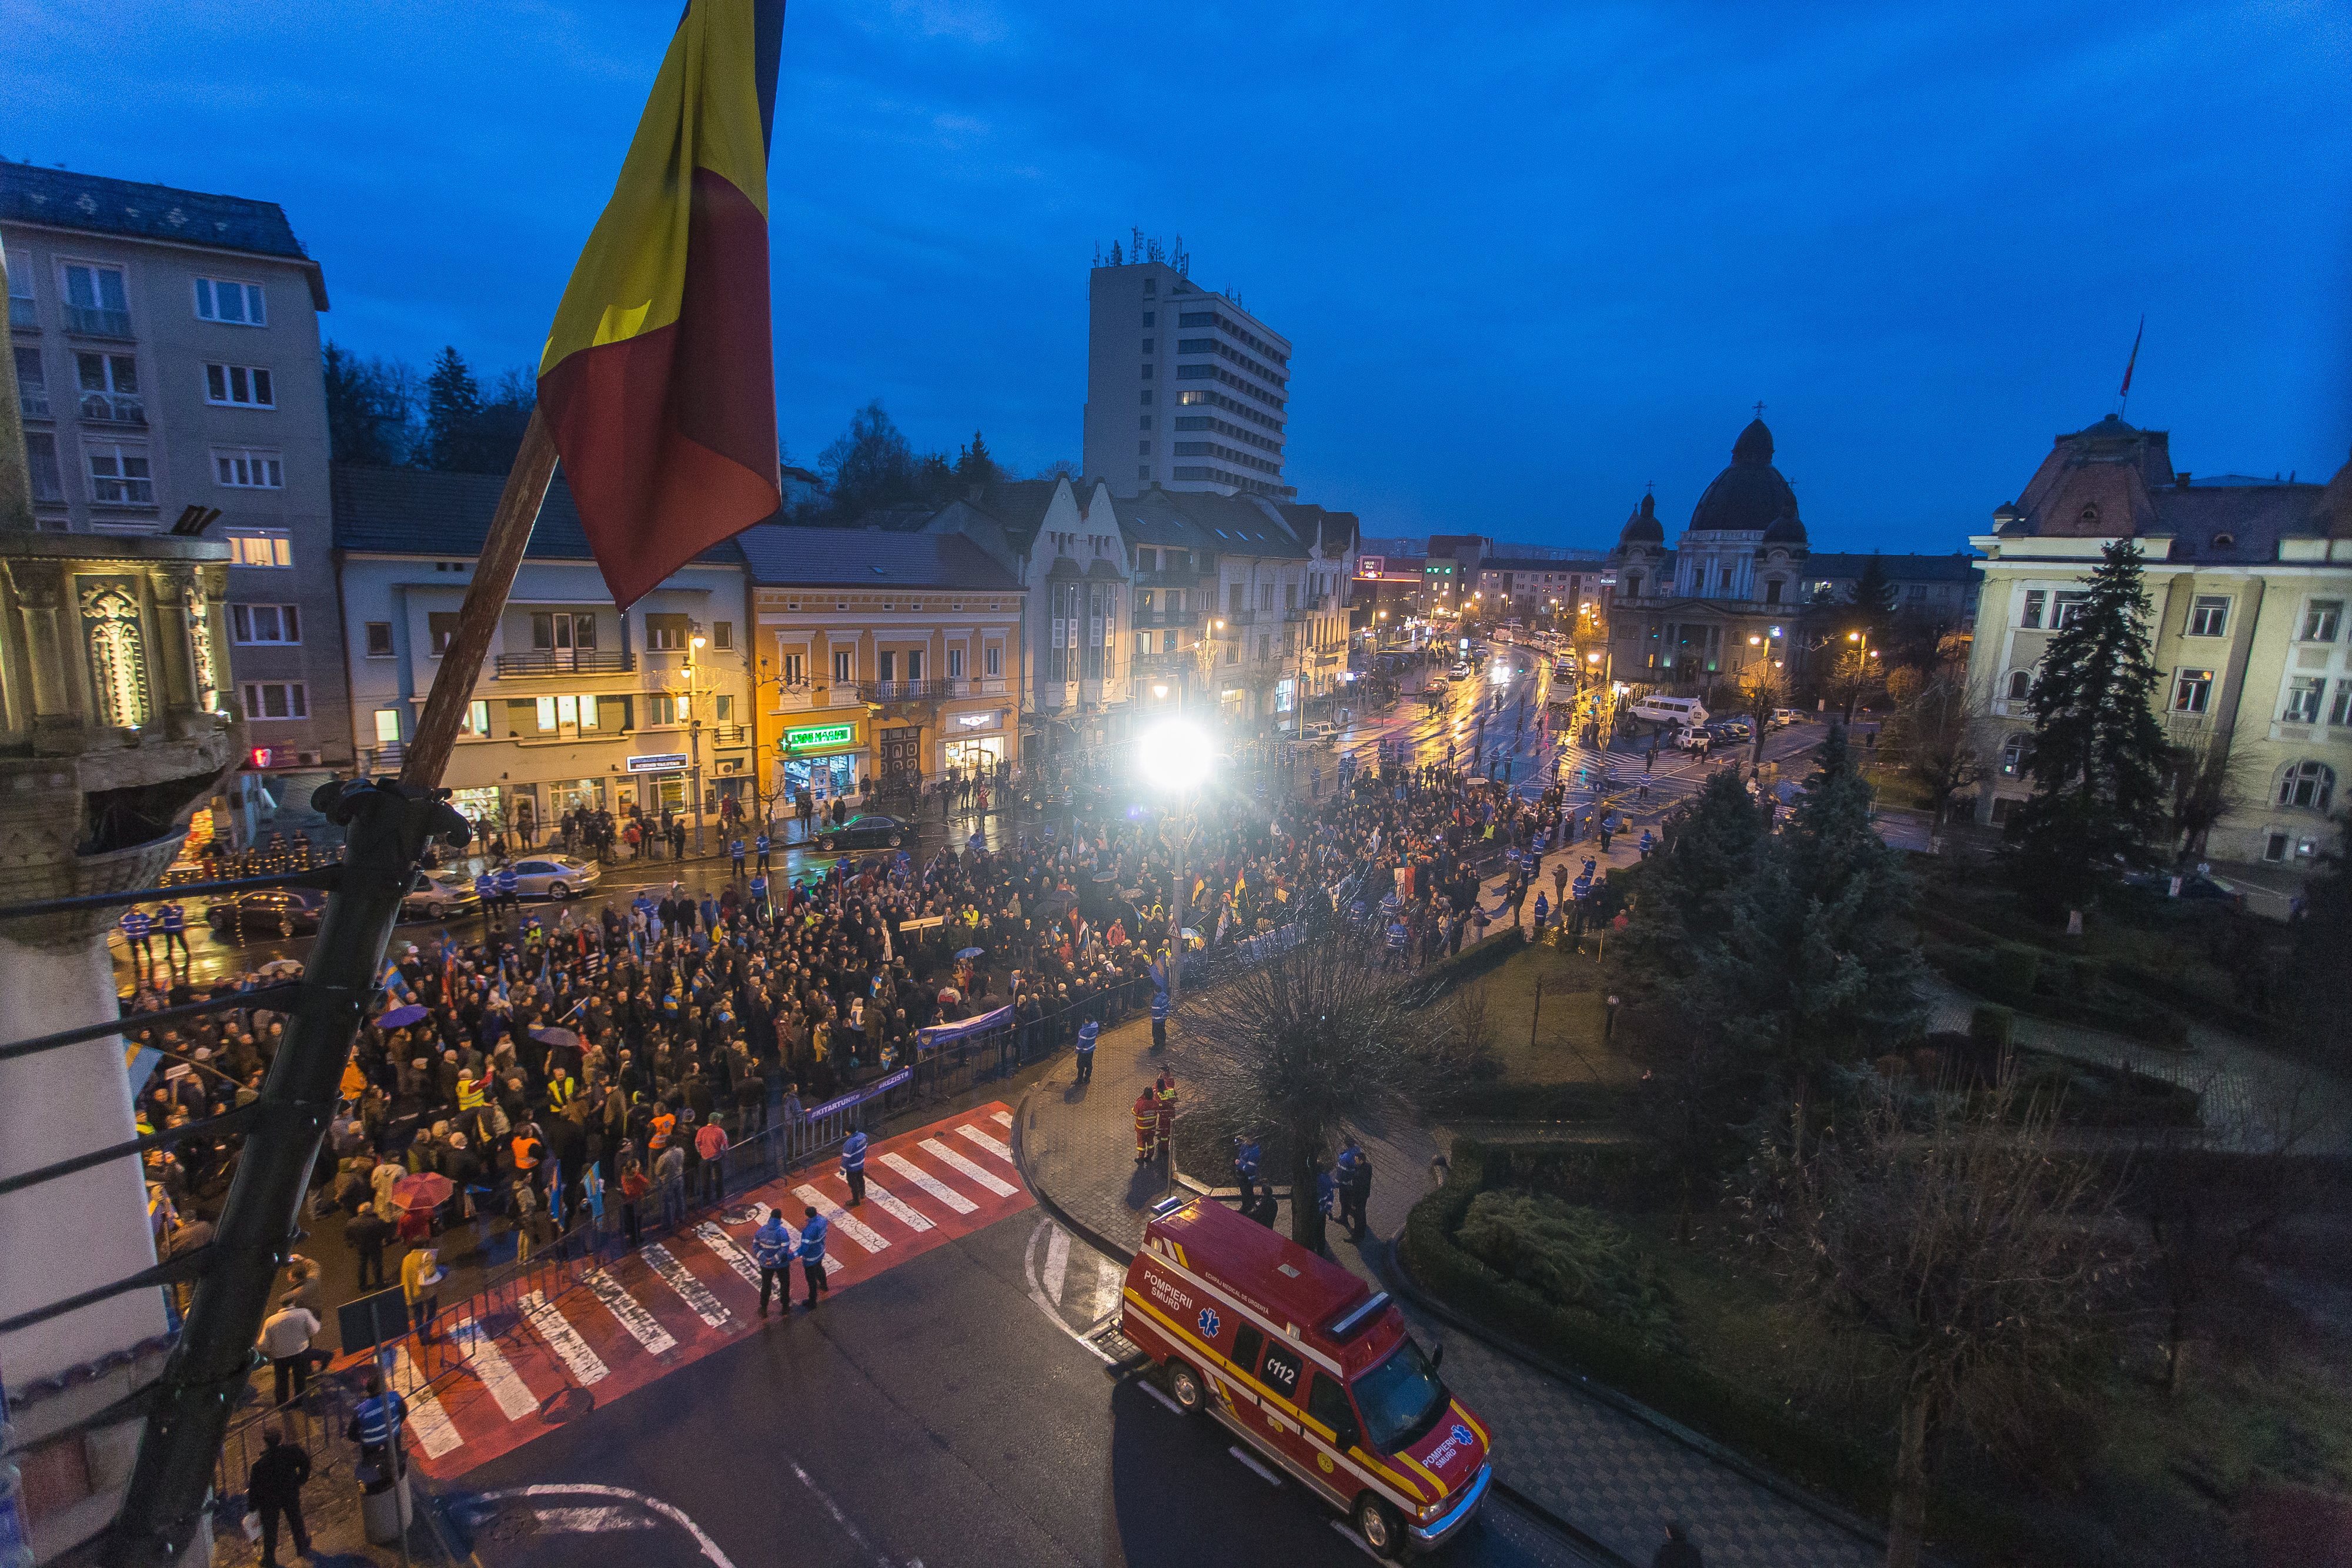 Résztvevők a székely vértanúk emlékművénél tartott megemlékezés után Marosvásárhely főterén, ahol átadták a prefektusi hivatal képviselőjének Románia kormányának és parlamentj